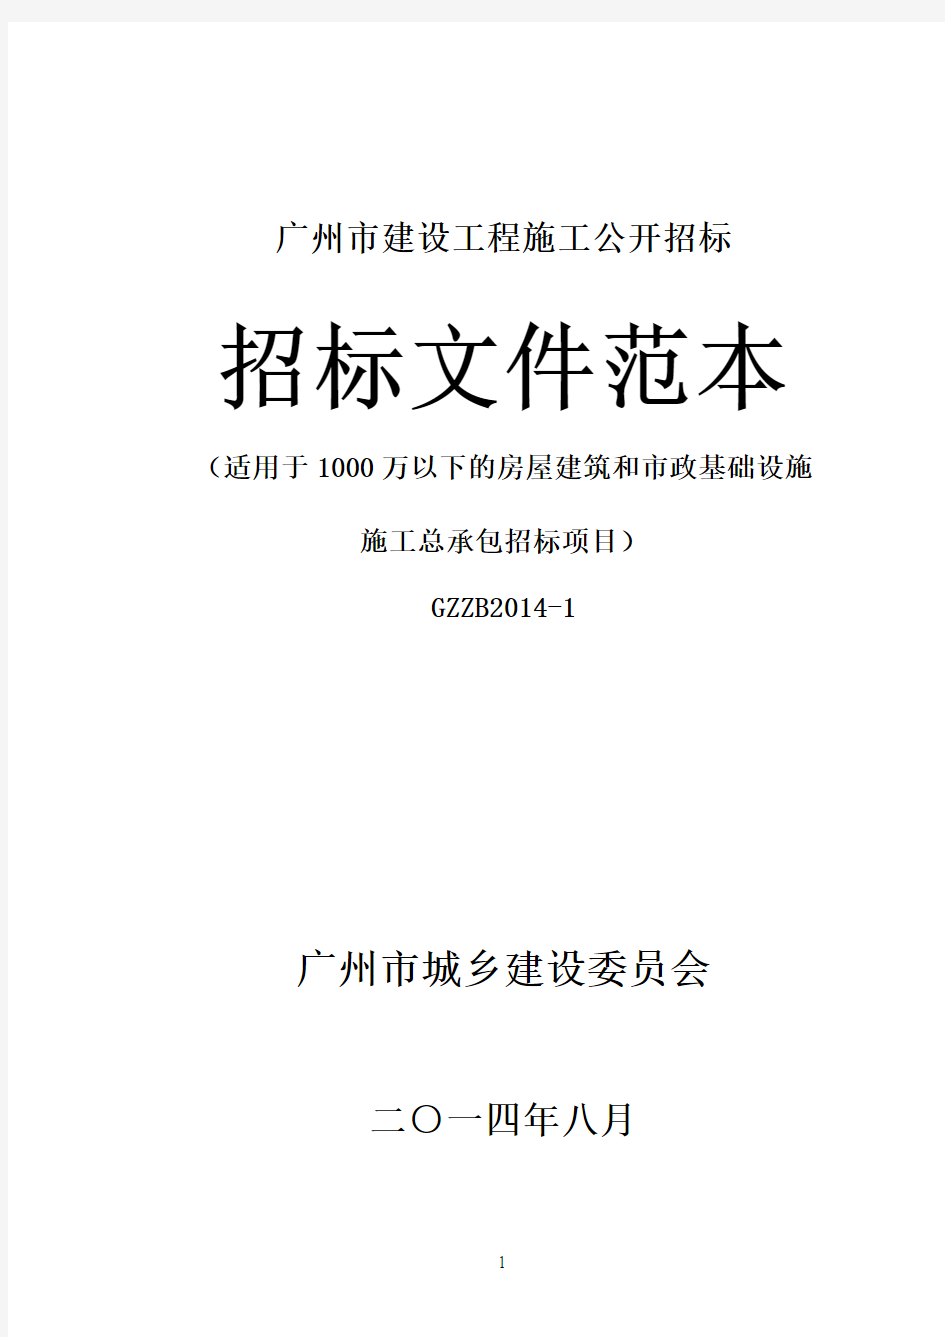 《广州市建设工程施工公开招标文件范本》(适用于1000万以下的房屋建筑和市政基础设施施工总承包招标项目)